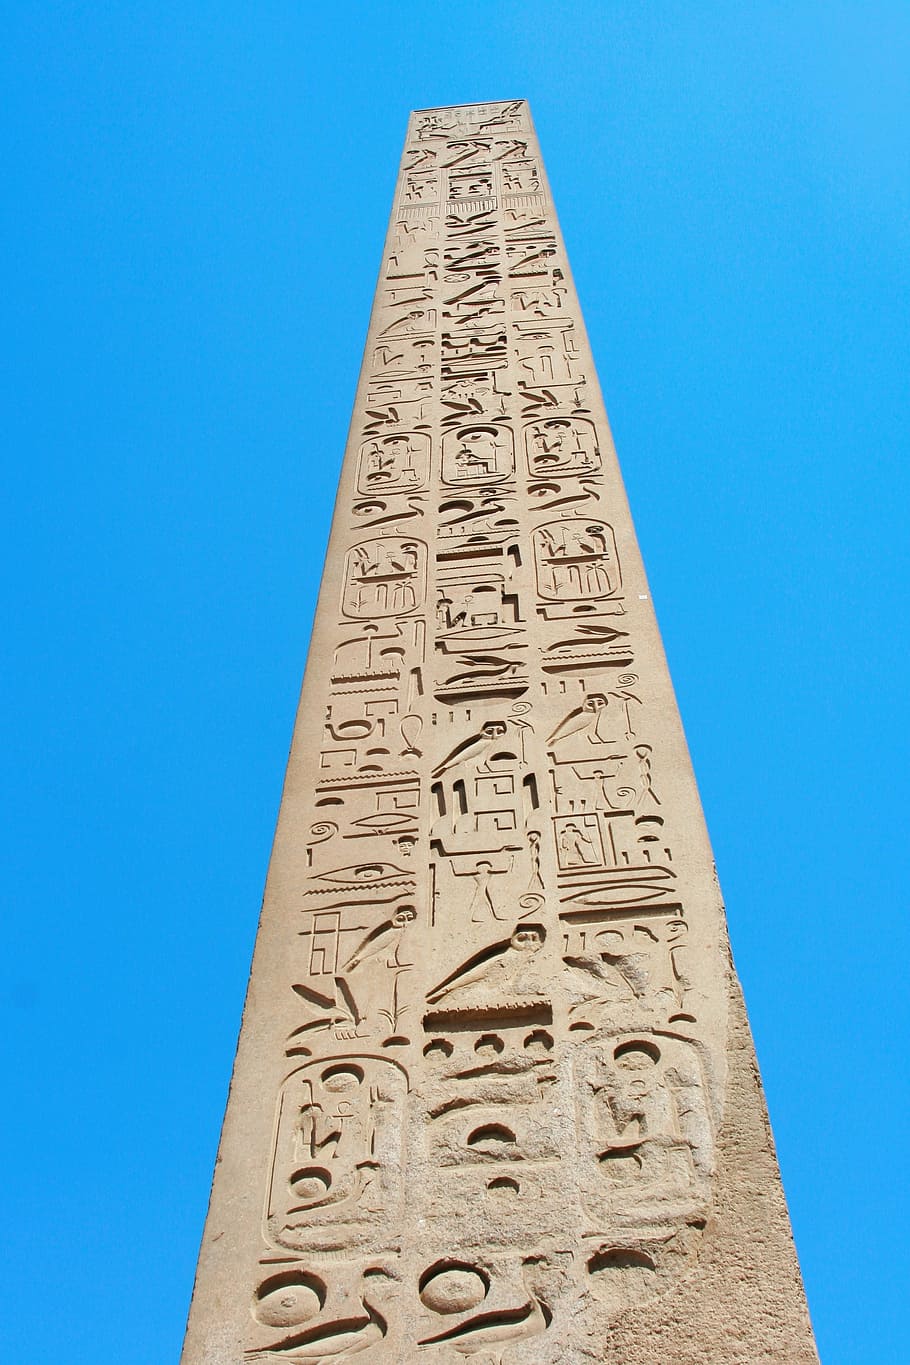 worm's eye view of tower, egypt, luxor, karnak temple, obelisk